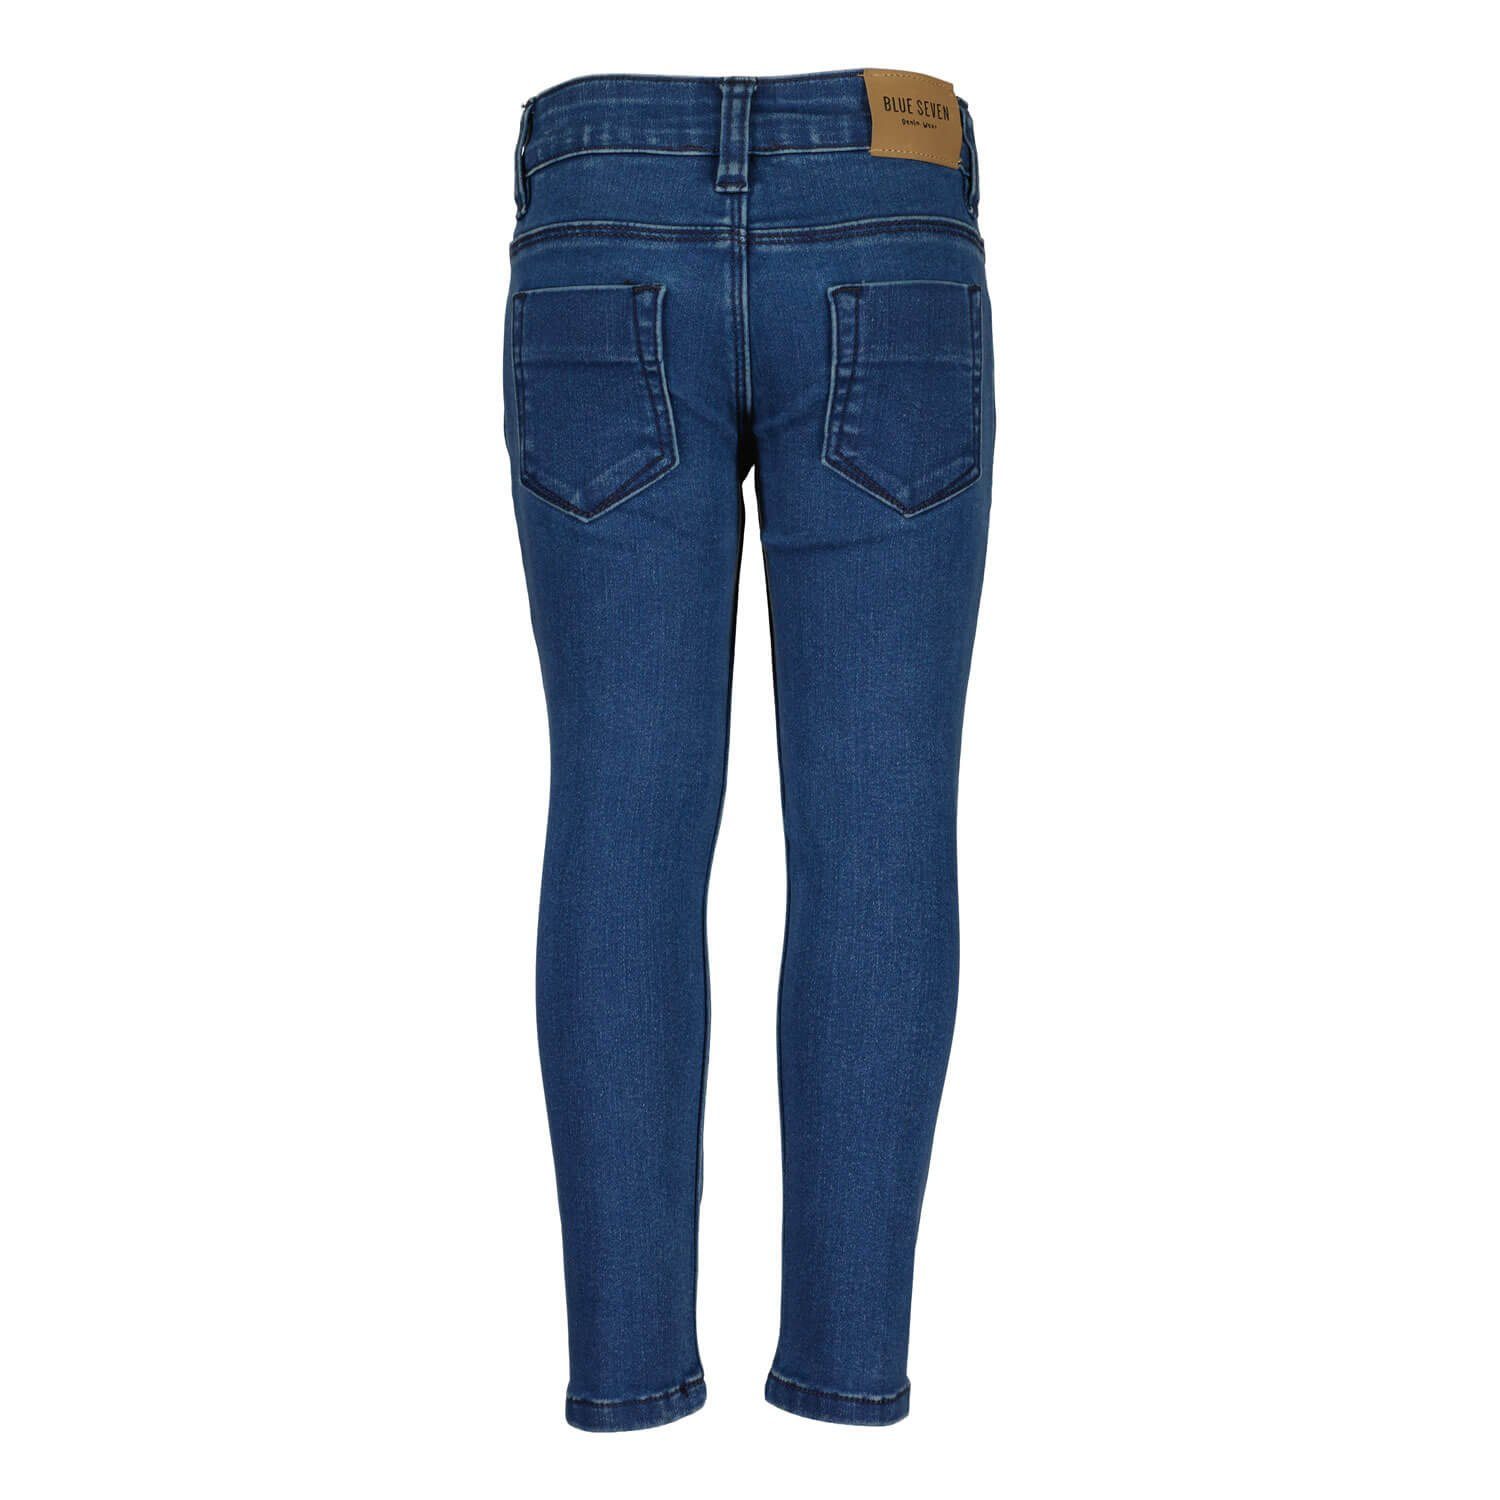 - Kinder Mädchen Blue Stickerei 5-Pocket-Stil Jeanshose Jog-Jeans mit Seven 5-Pocket-Hose